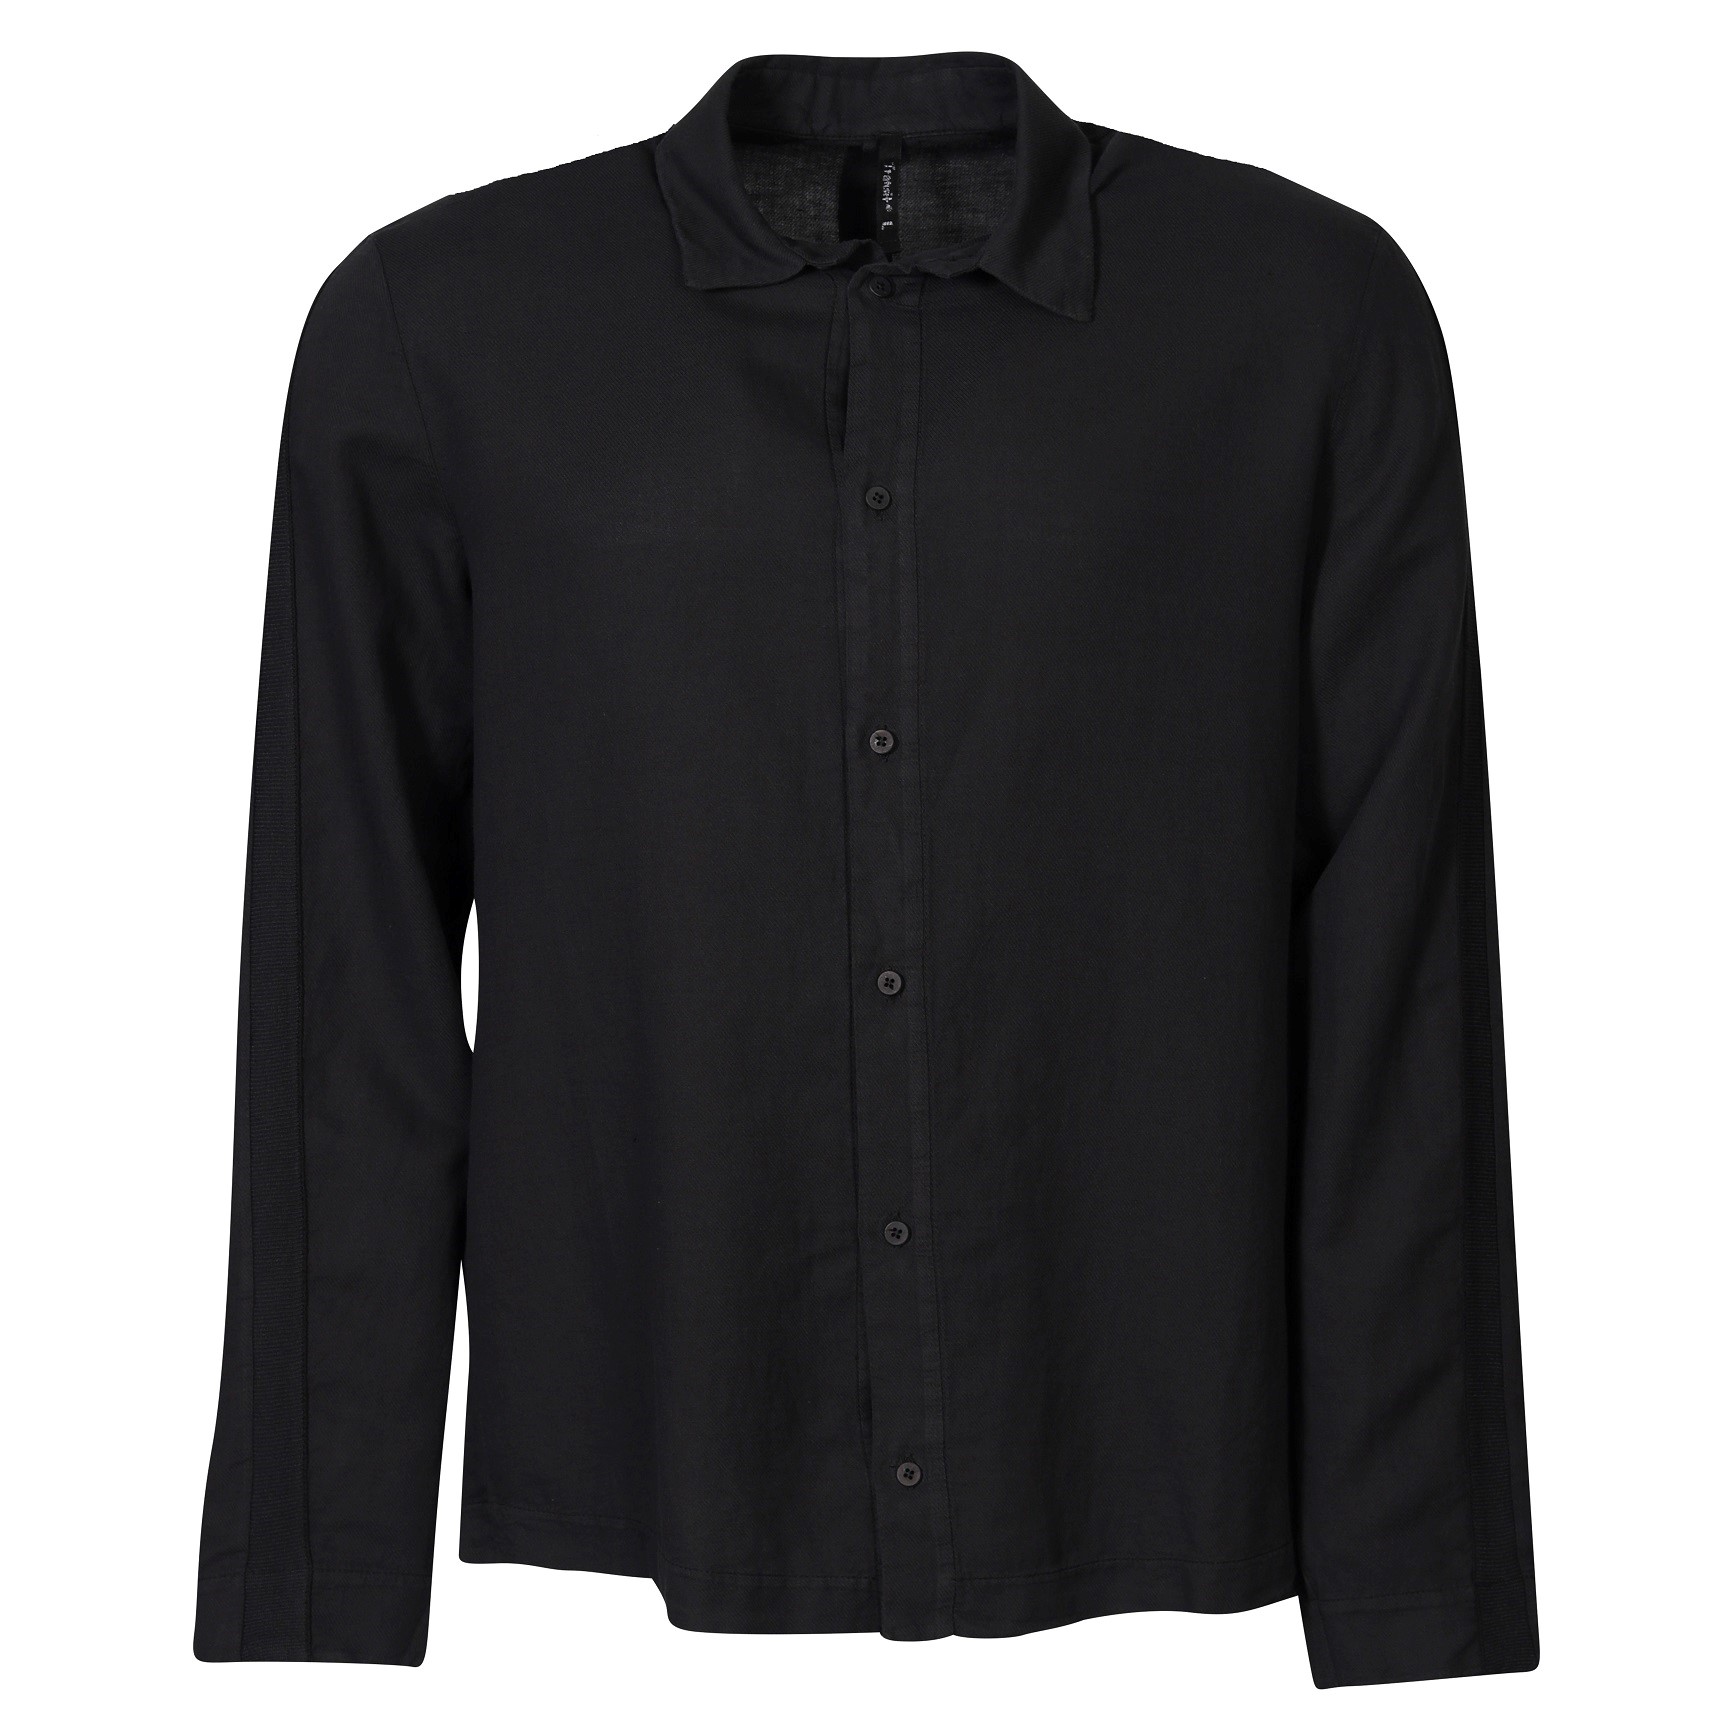 TRANSIT UOMO Cotton Linen Shirt in Black L